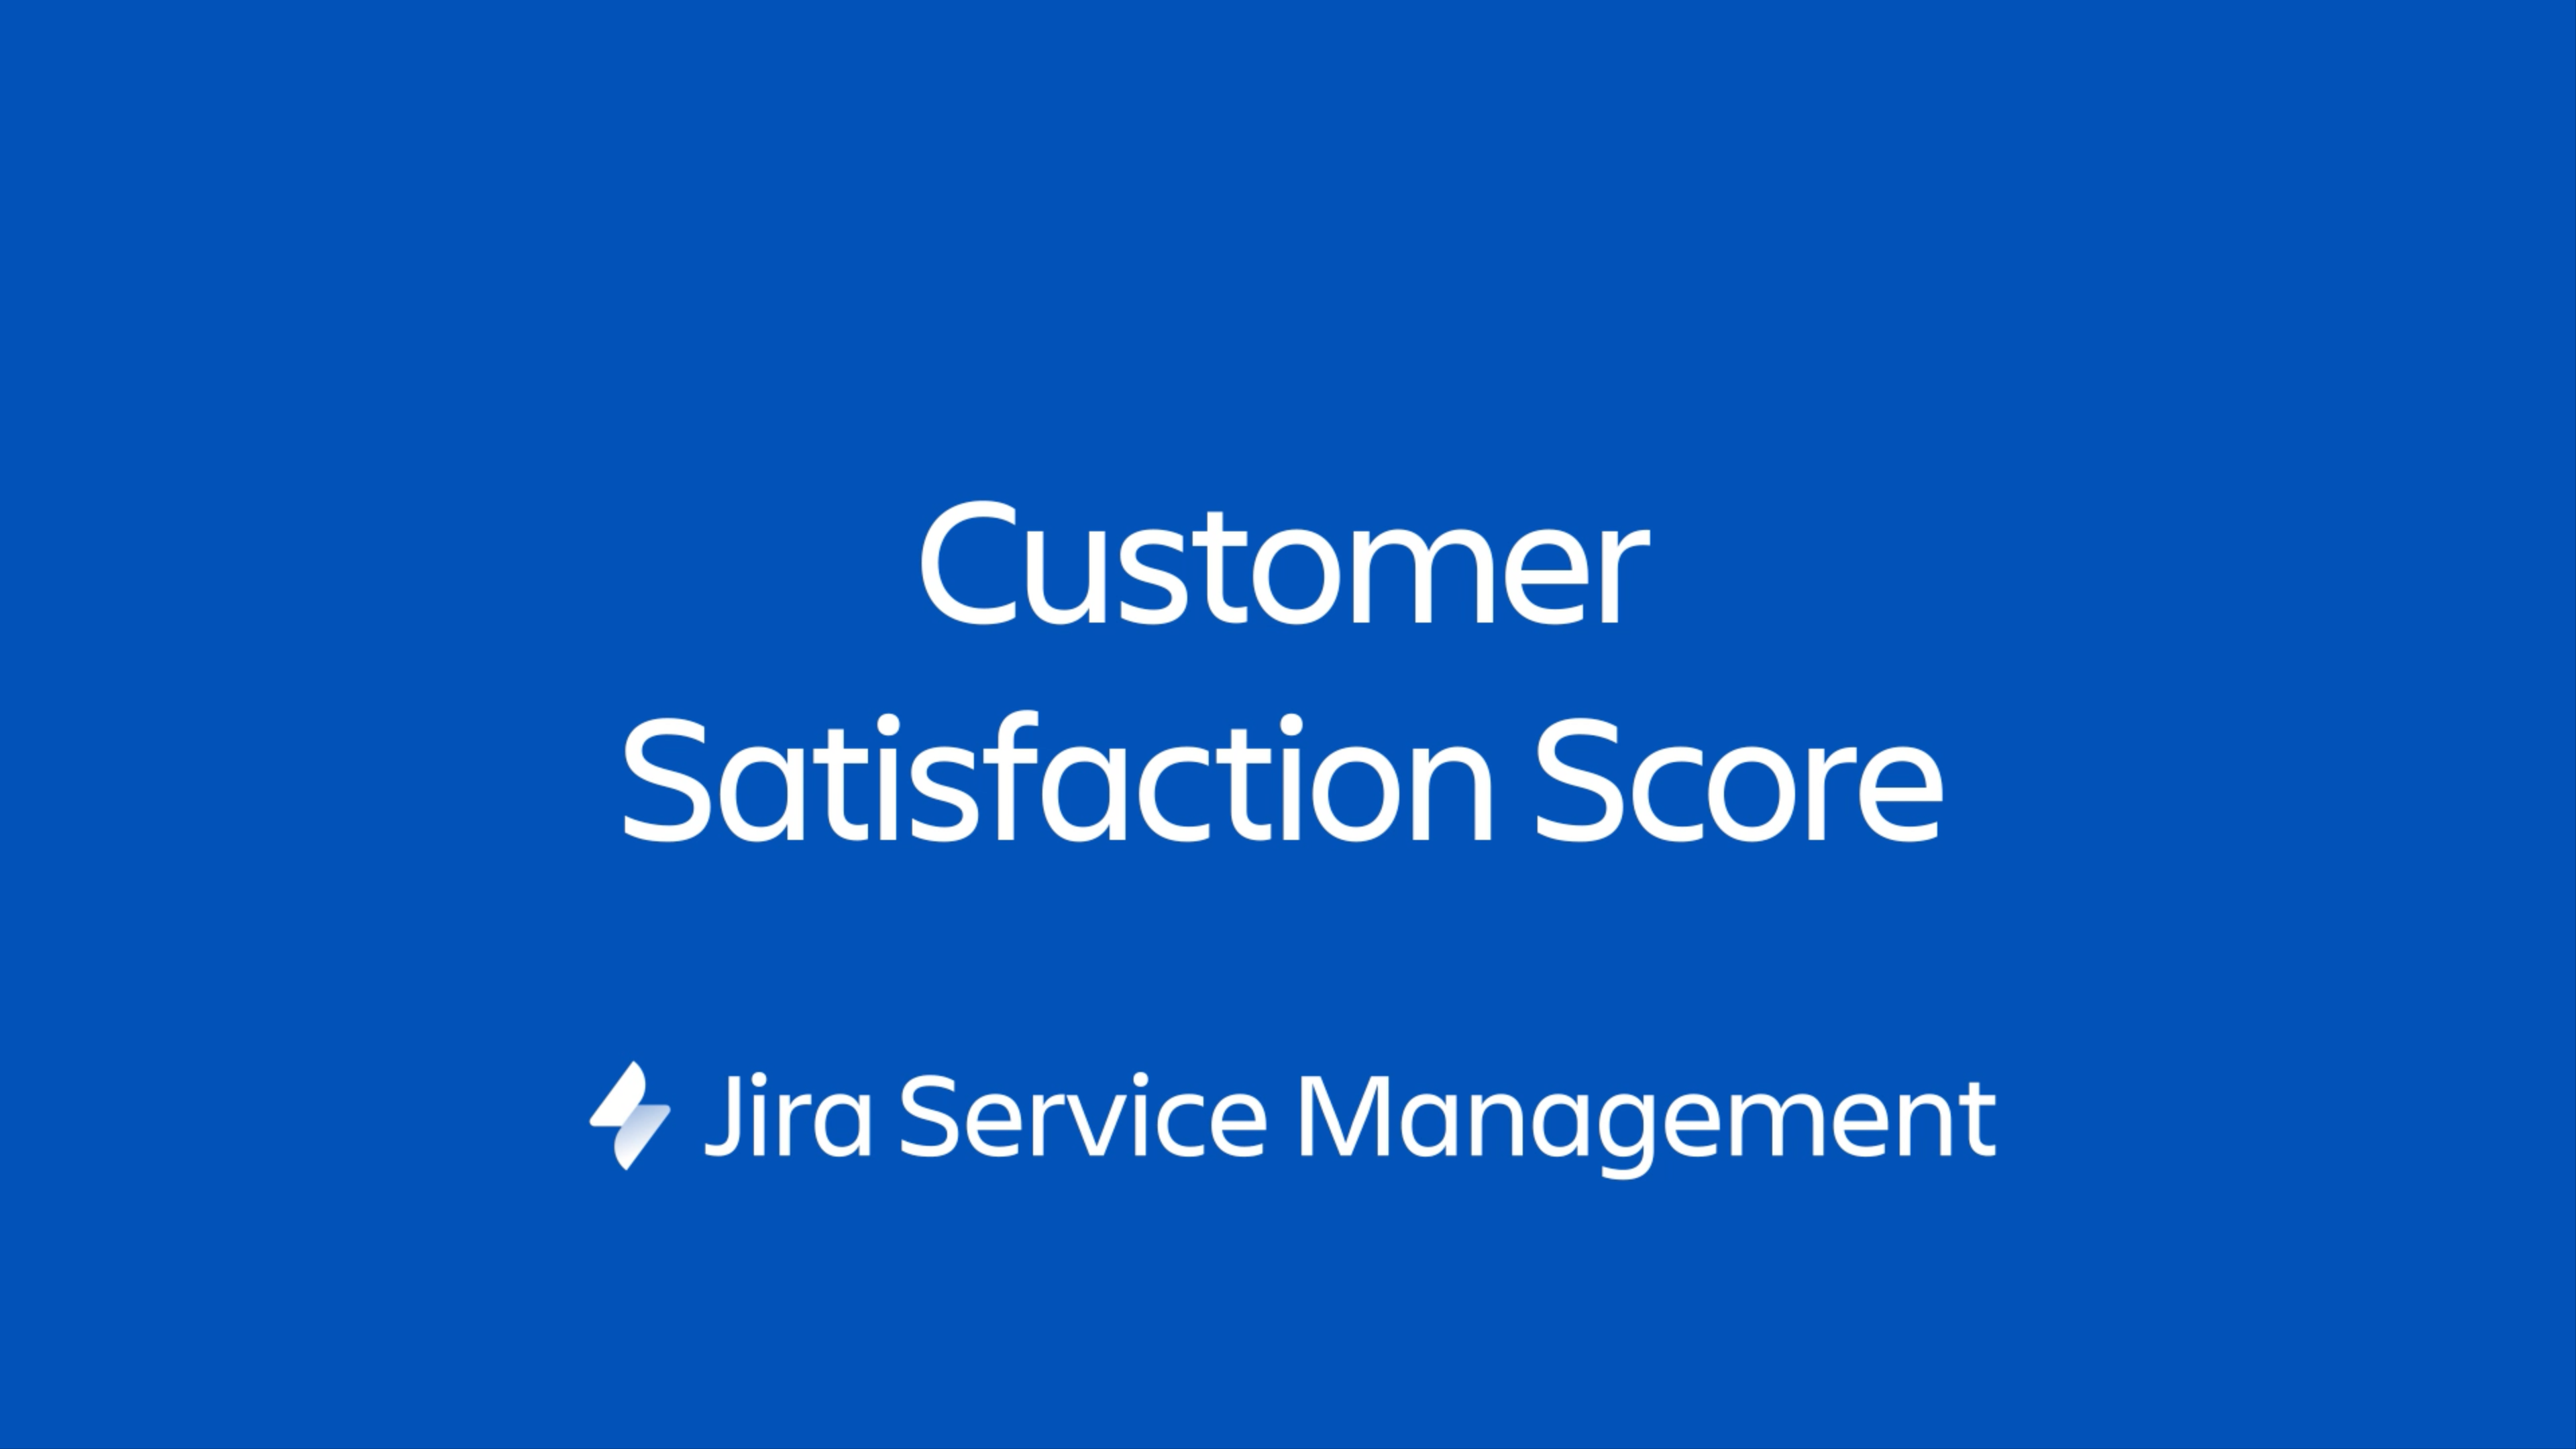 Een Jira Service Management Widget is een miniportal die kan worden geïntegreerd op elke webpagina die je beheert.